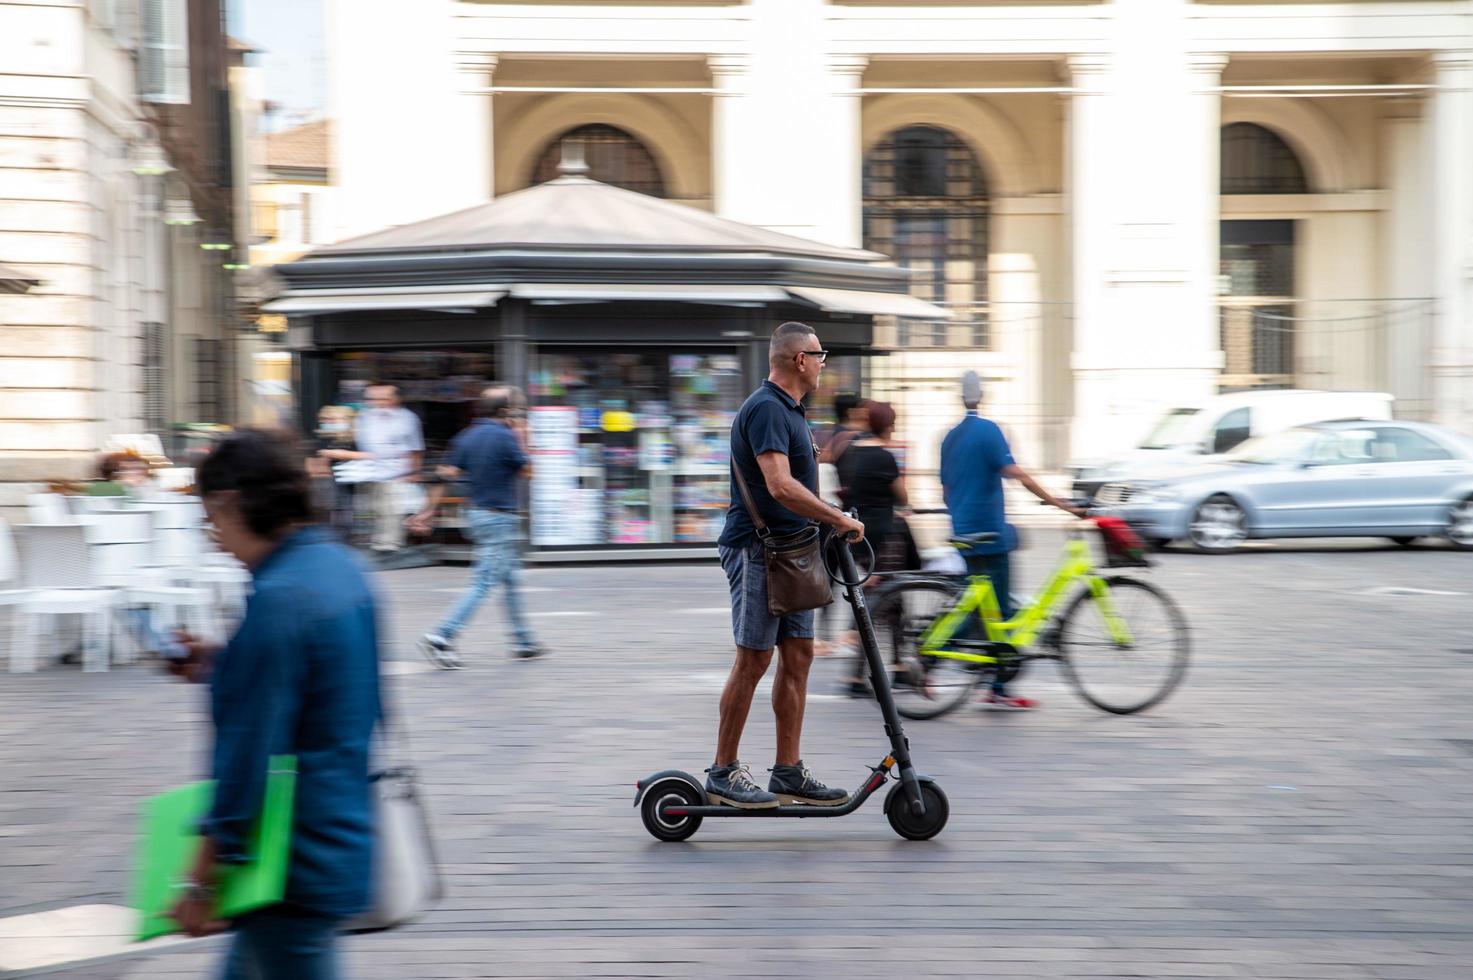 Terni, Italien, 29.09.2021 - Person auf einem Roller in der Stadt foto